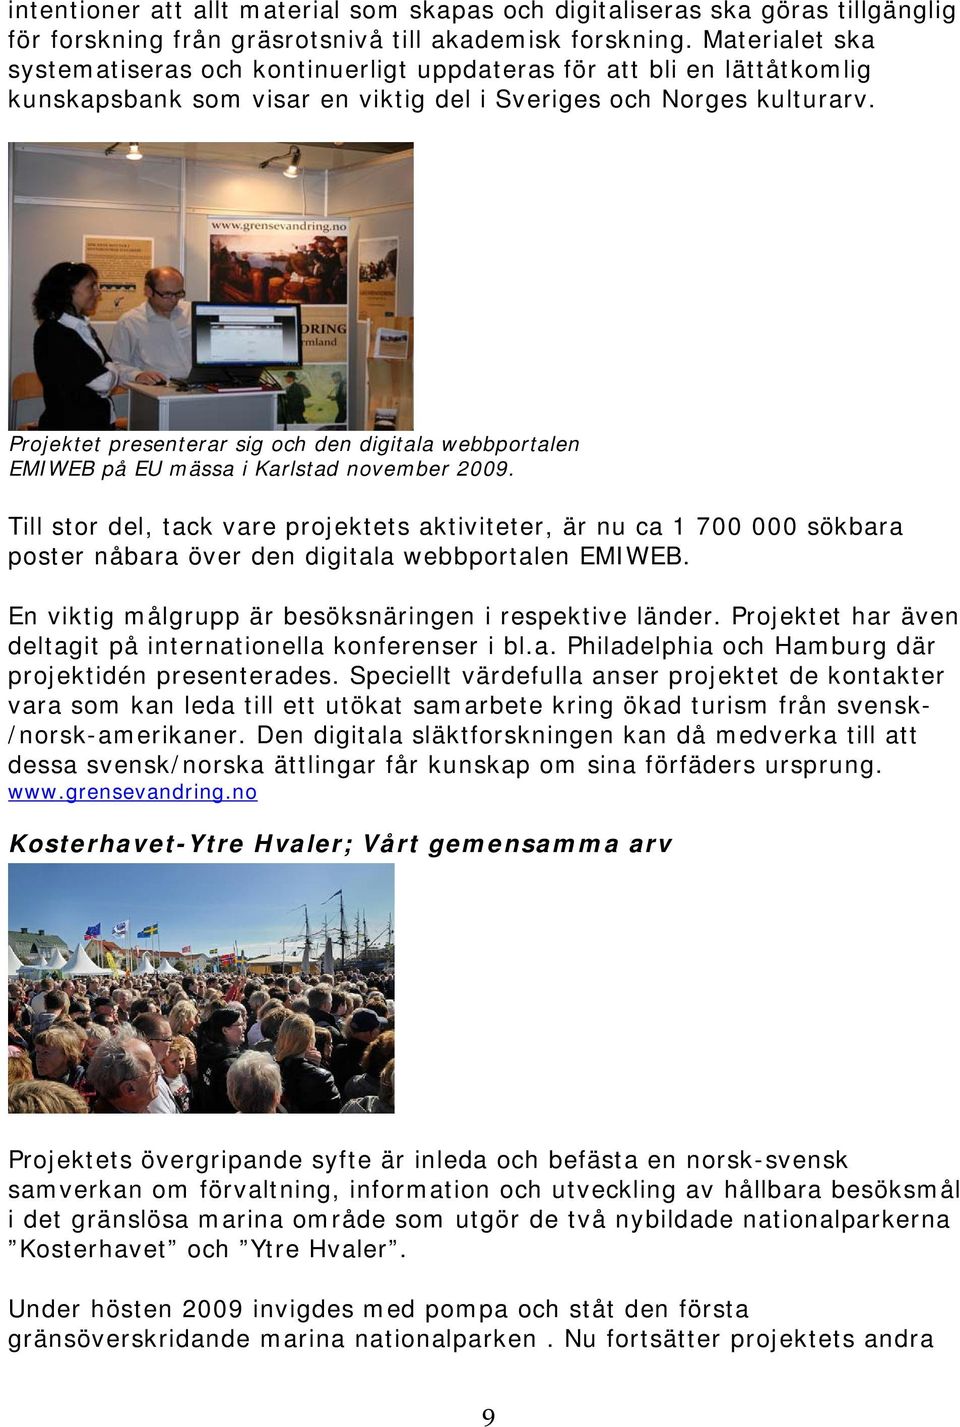 Projektet presenterar sig och den digitala webbportalen EMIWEB på EU mässa i Karlstad november 2009.